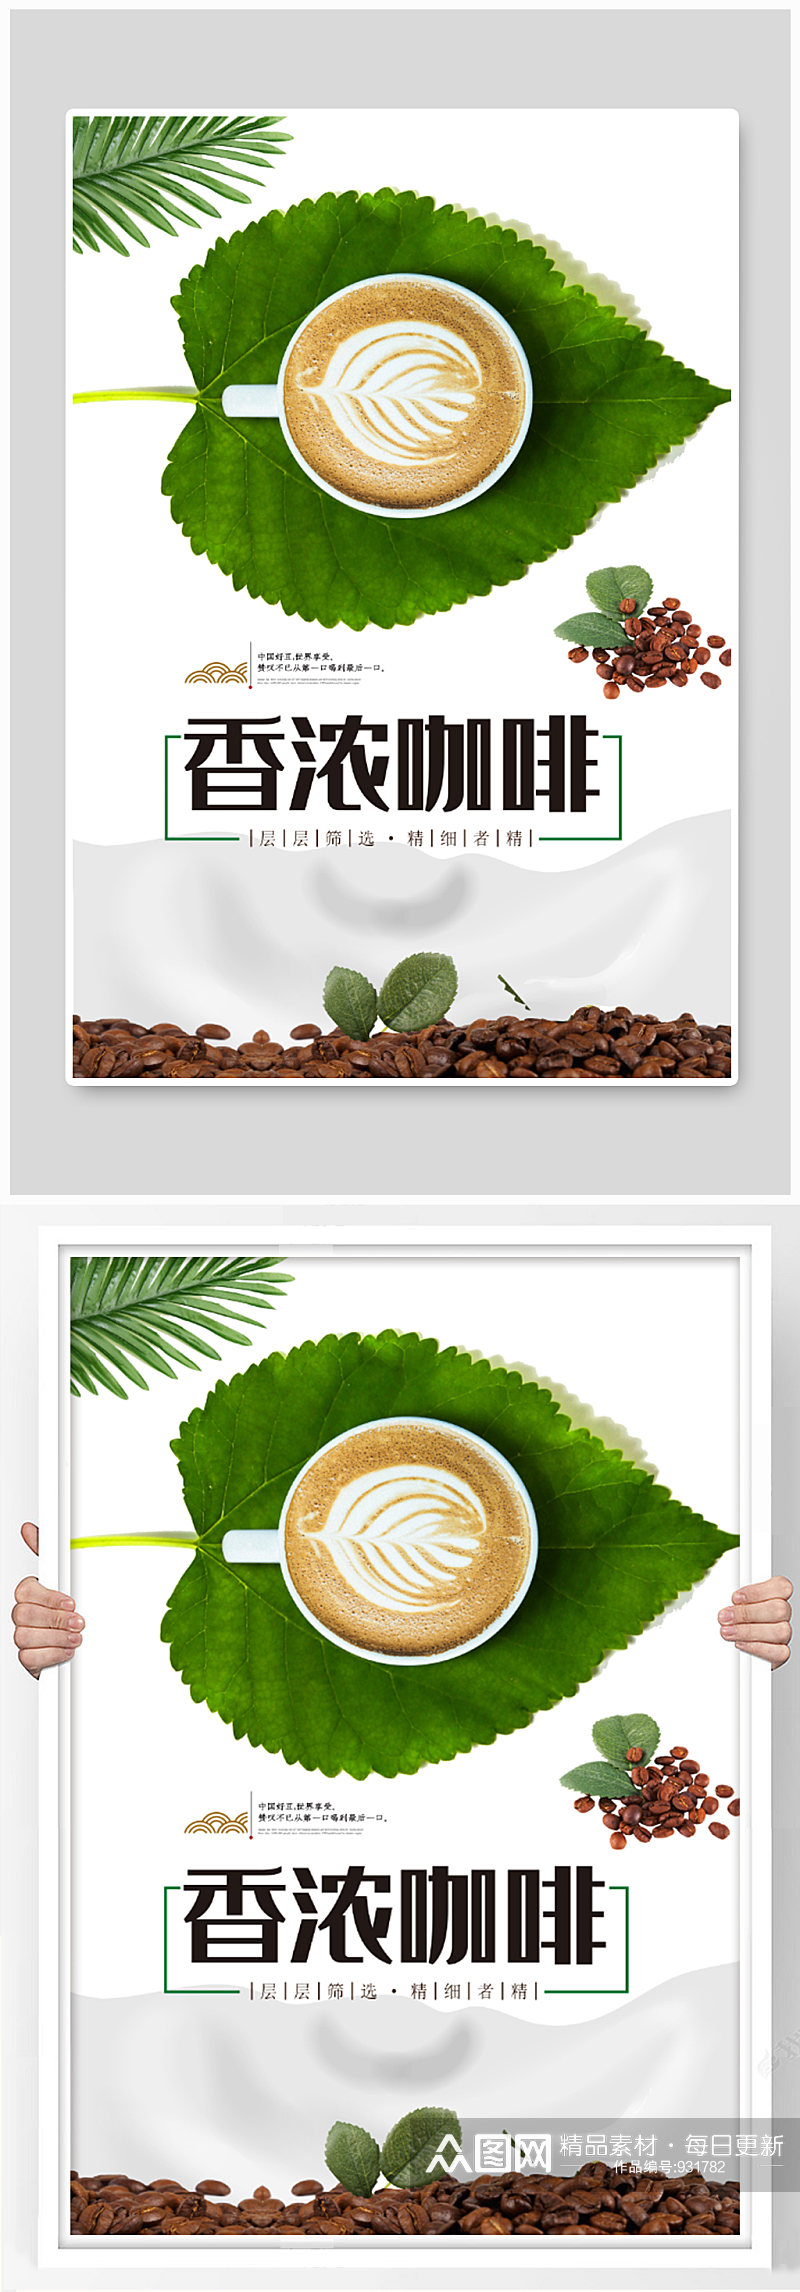 香浓咖啡宣传海报设计素材